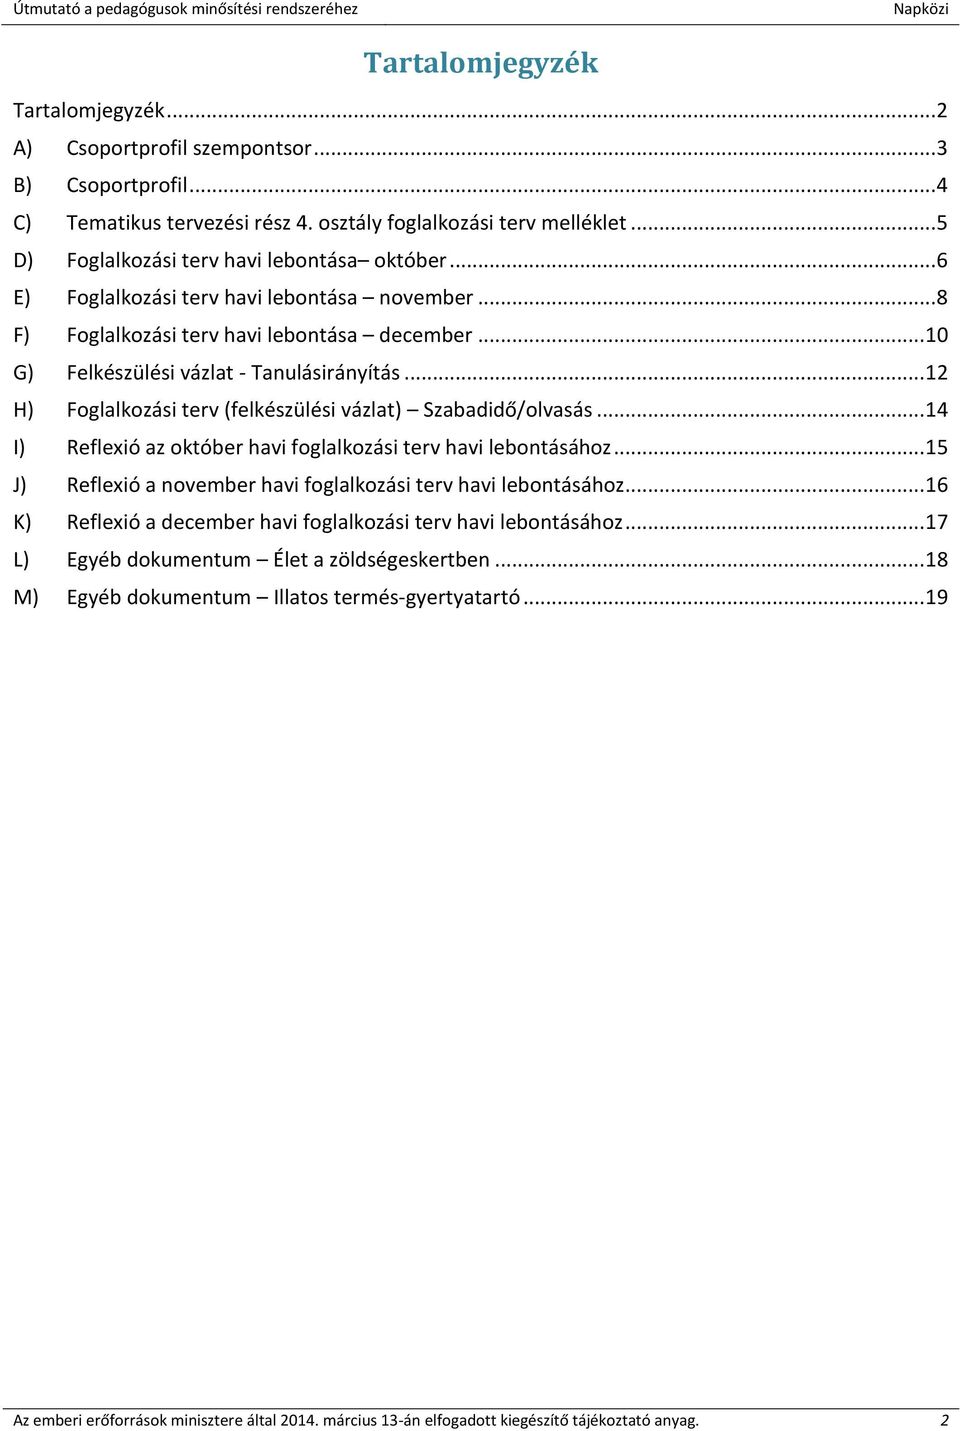 Kiegészítés az Oktatási Hivatal által kidolgozott. Útmutató a pedagógusok  minősítési rendszeréhez. felhasználói dokumentáció értelmezéséhez. - PDF  Ingyenes letöltés